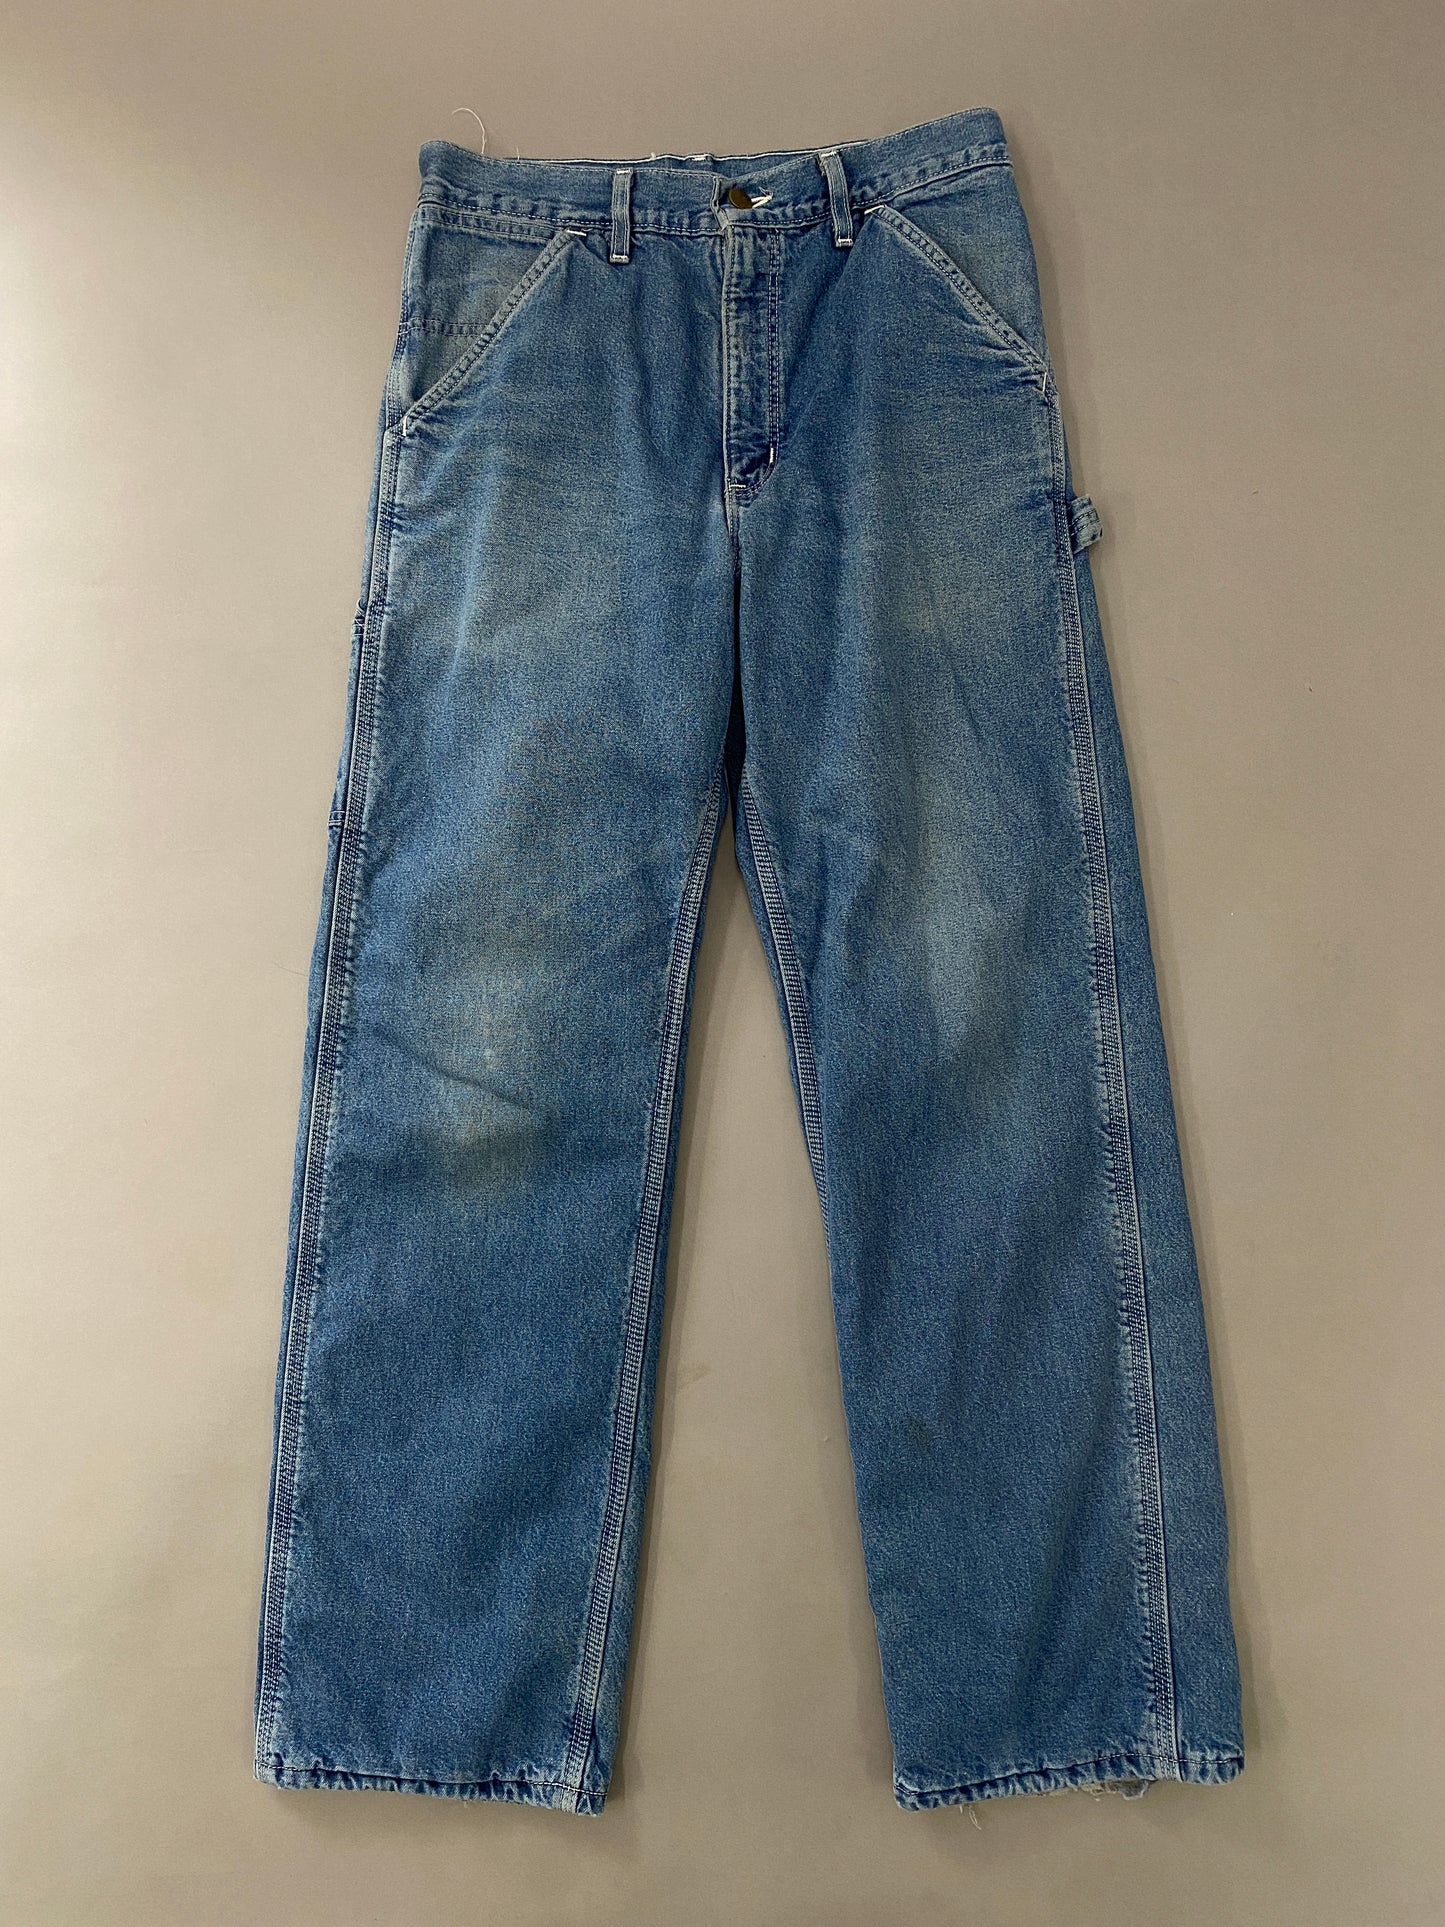 Carhartt Carpenter Jeans - 30x30